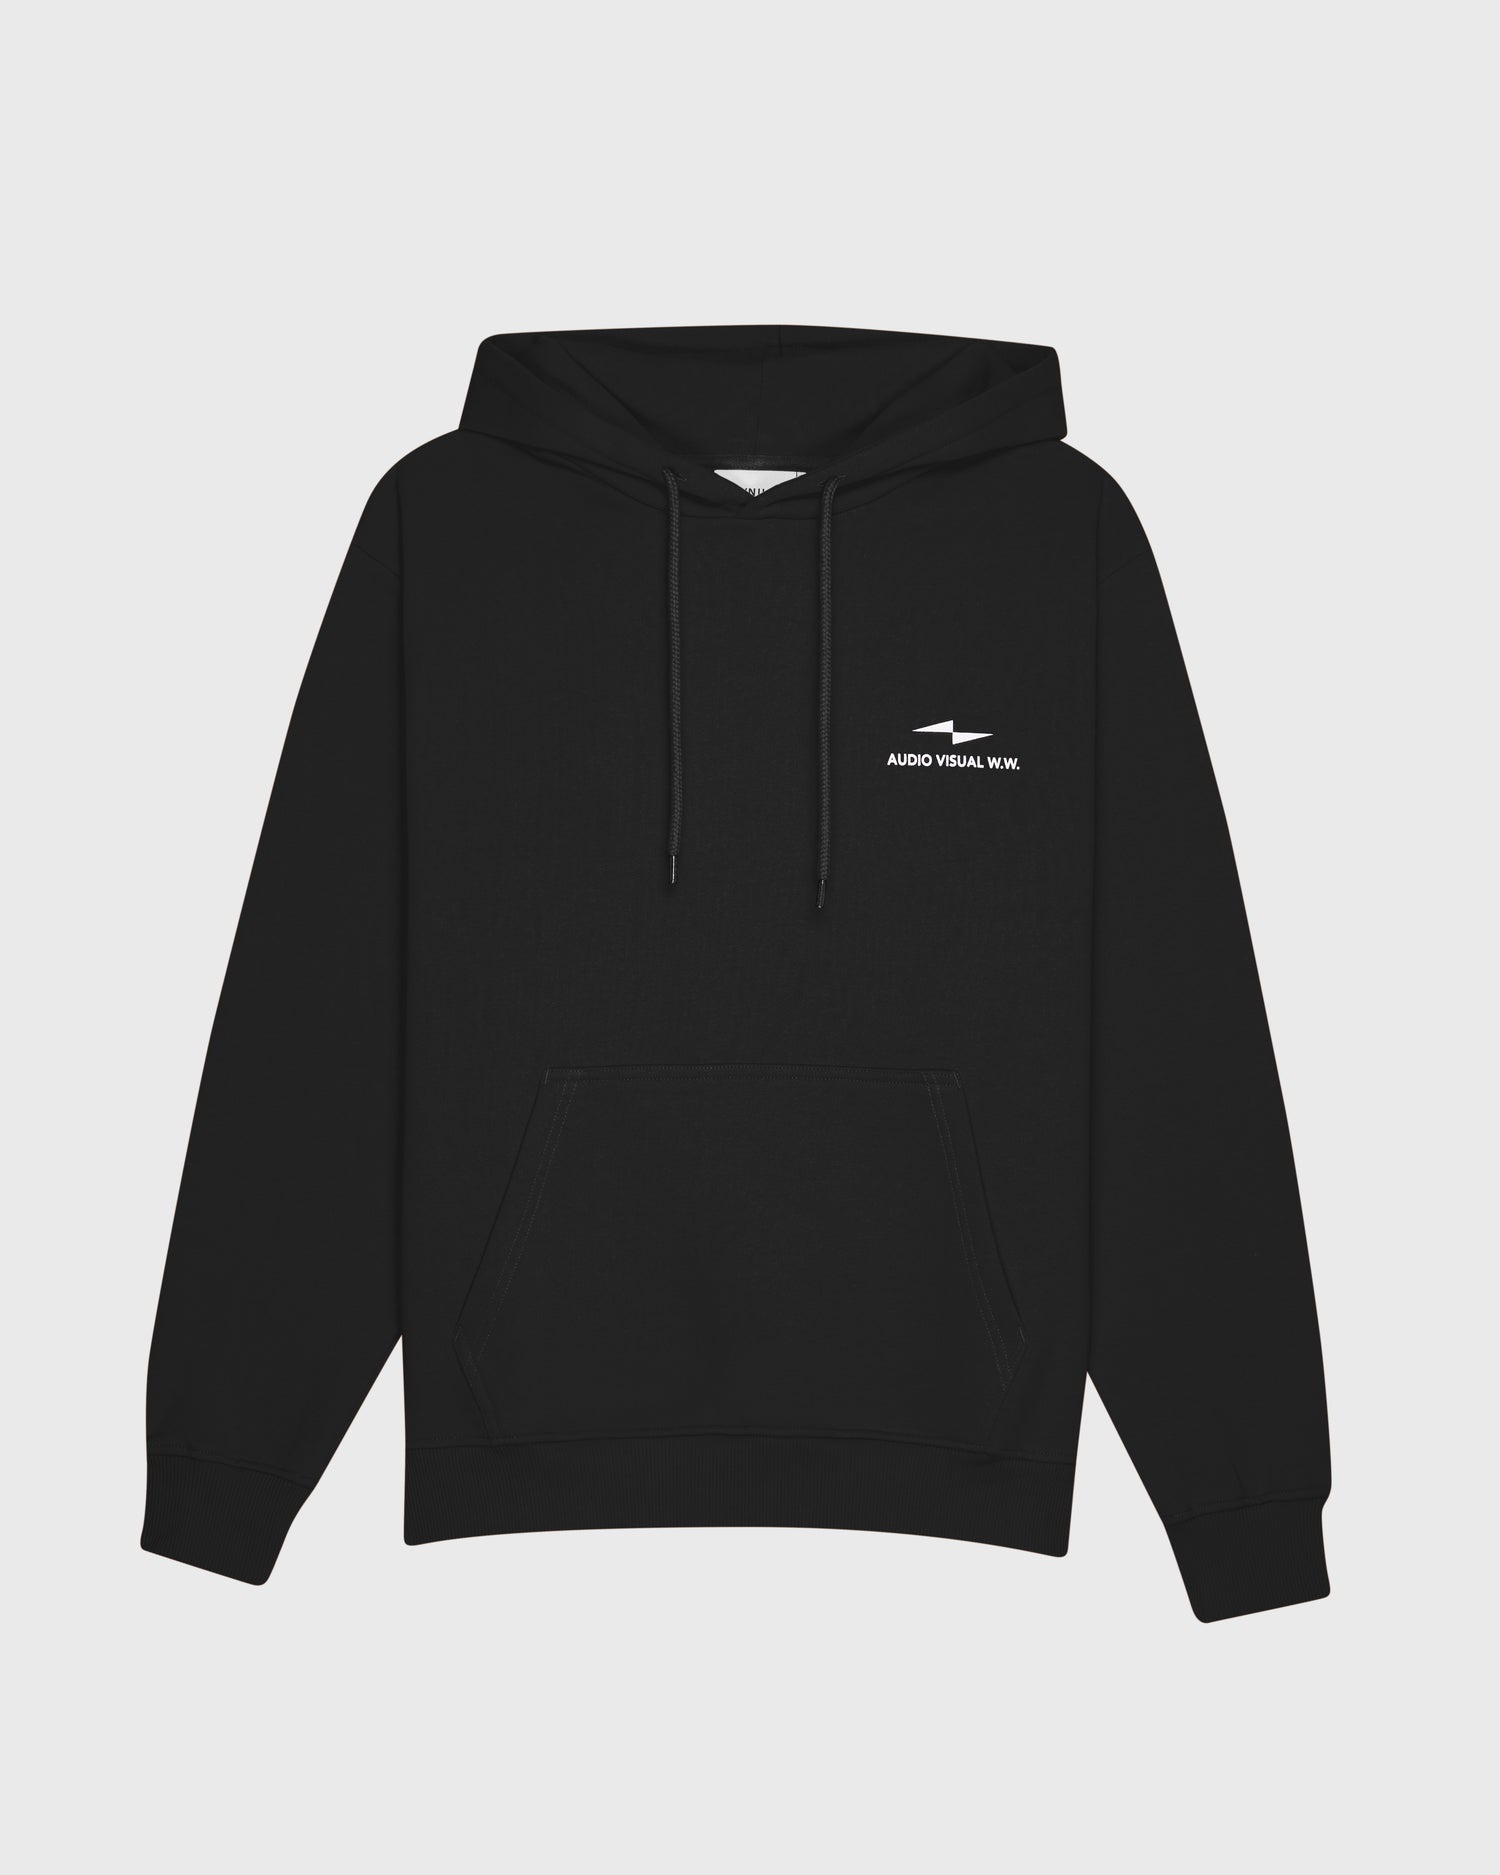 hoodie-onset-black-vertical-v3-avnier-durable-2-packshot-face - noir